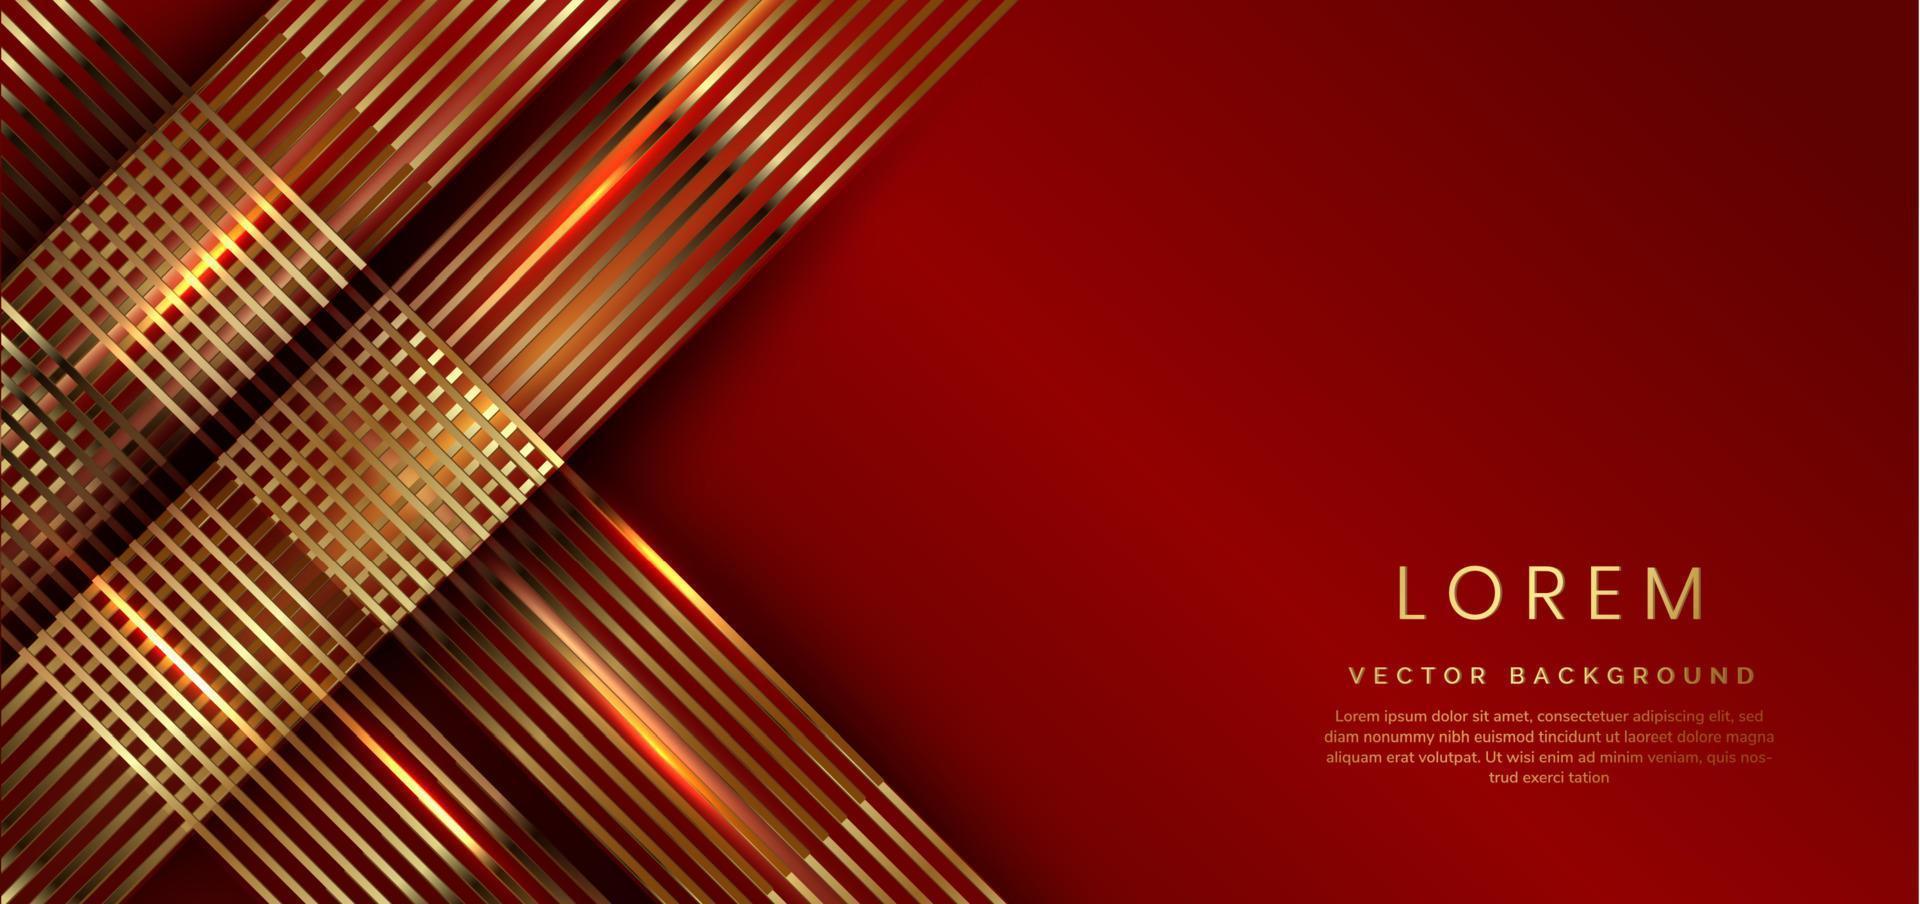 abstrato 3d luxo modelo fundo vermelho brilhante com linhas de brilho dourado brilhante. vetor